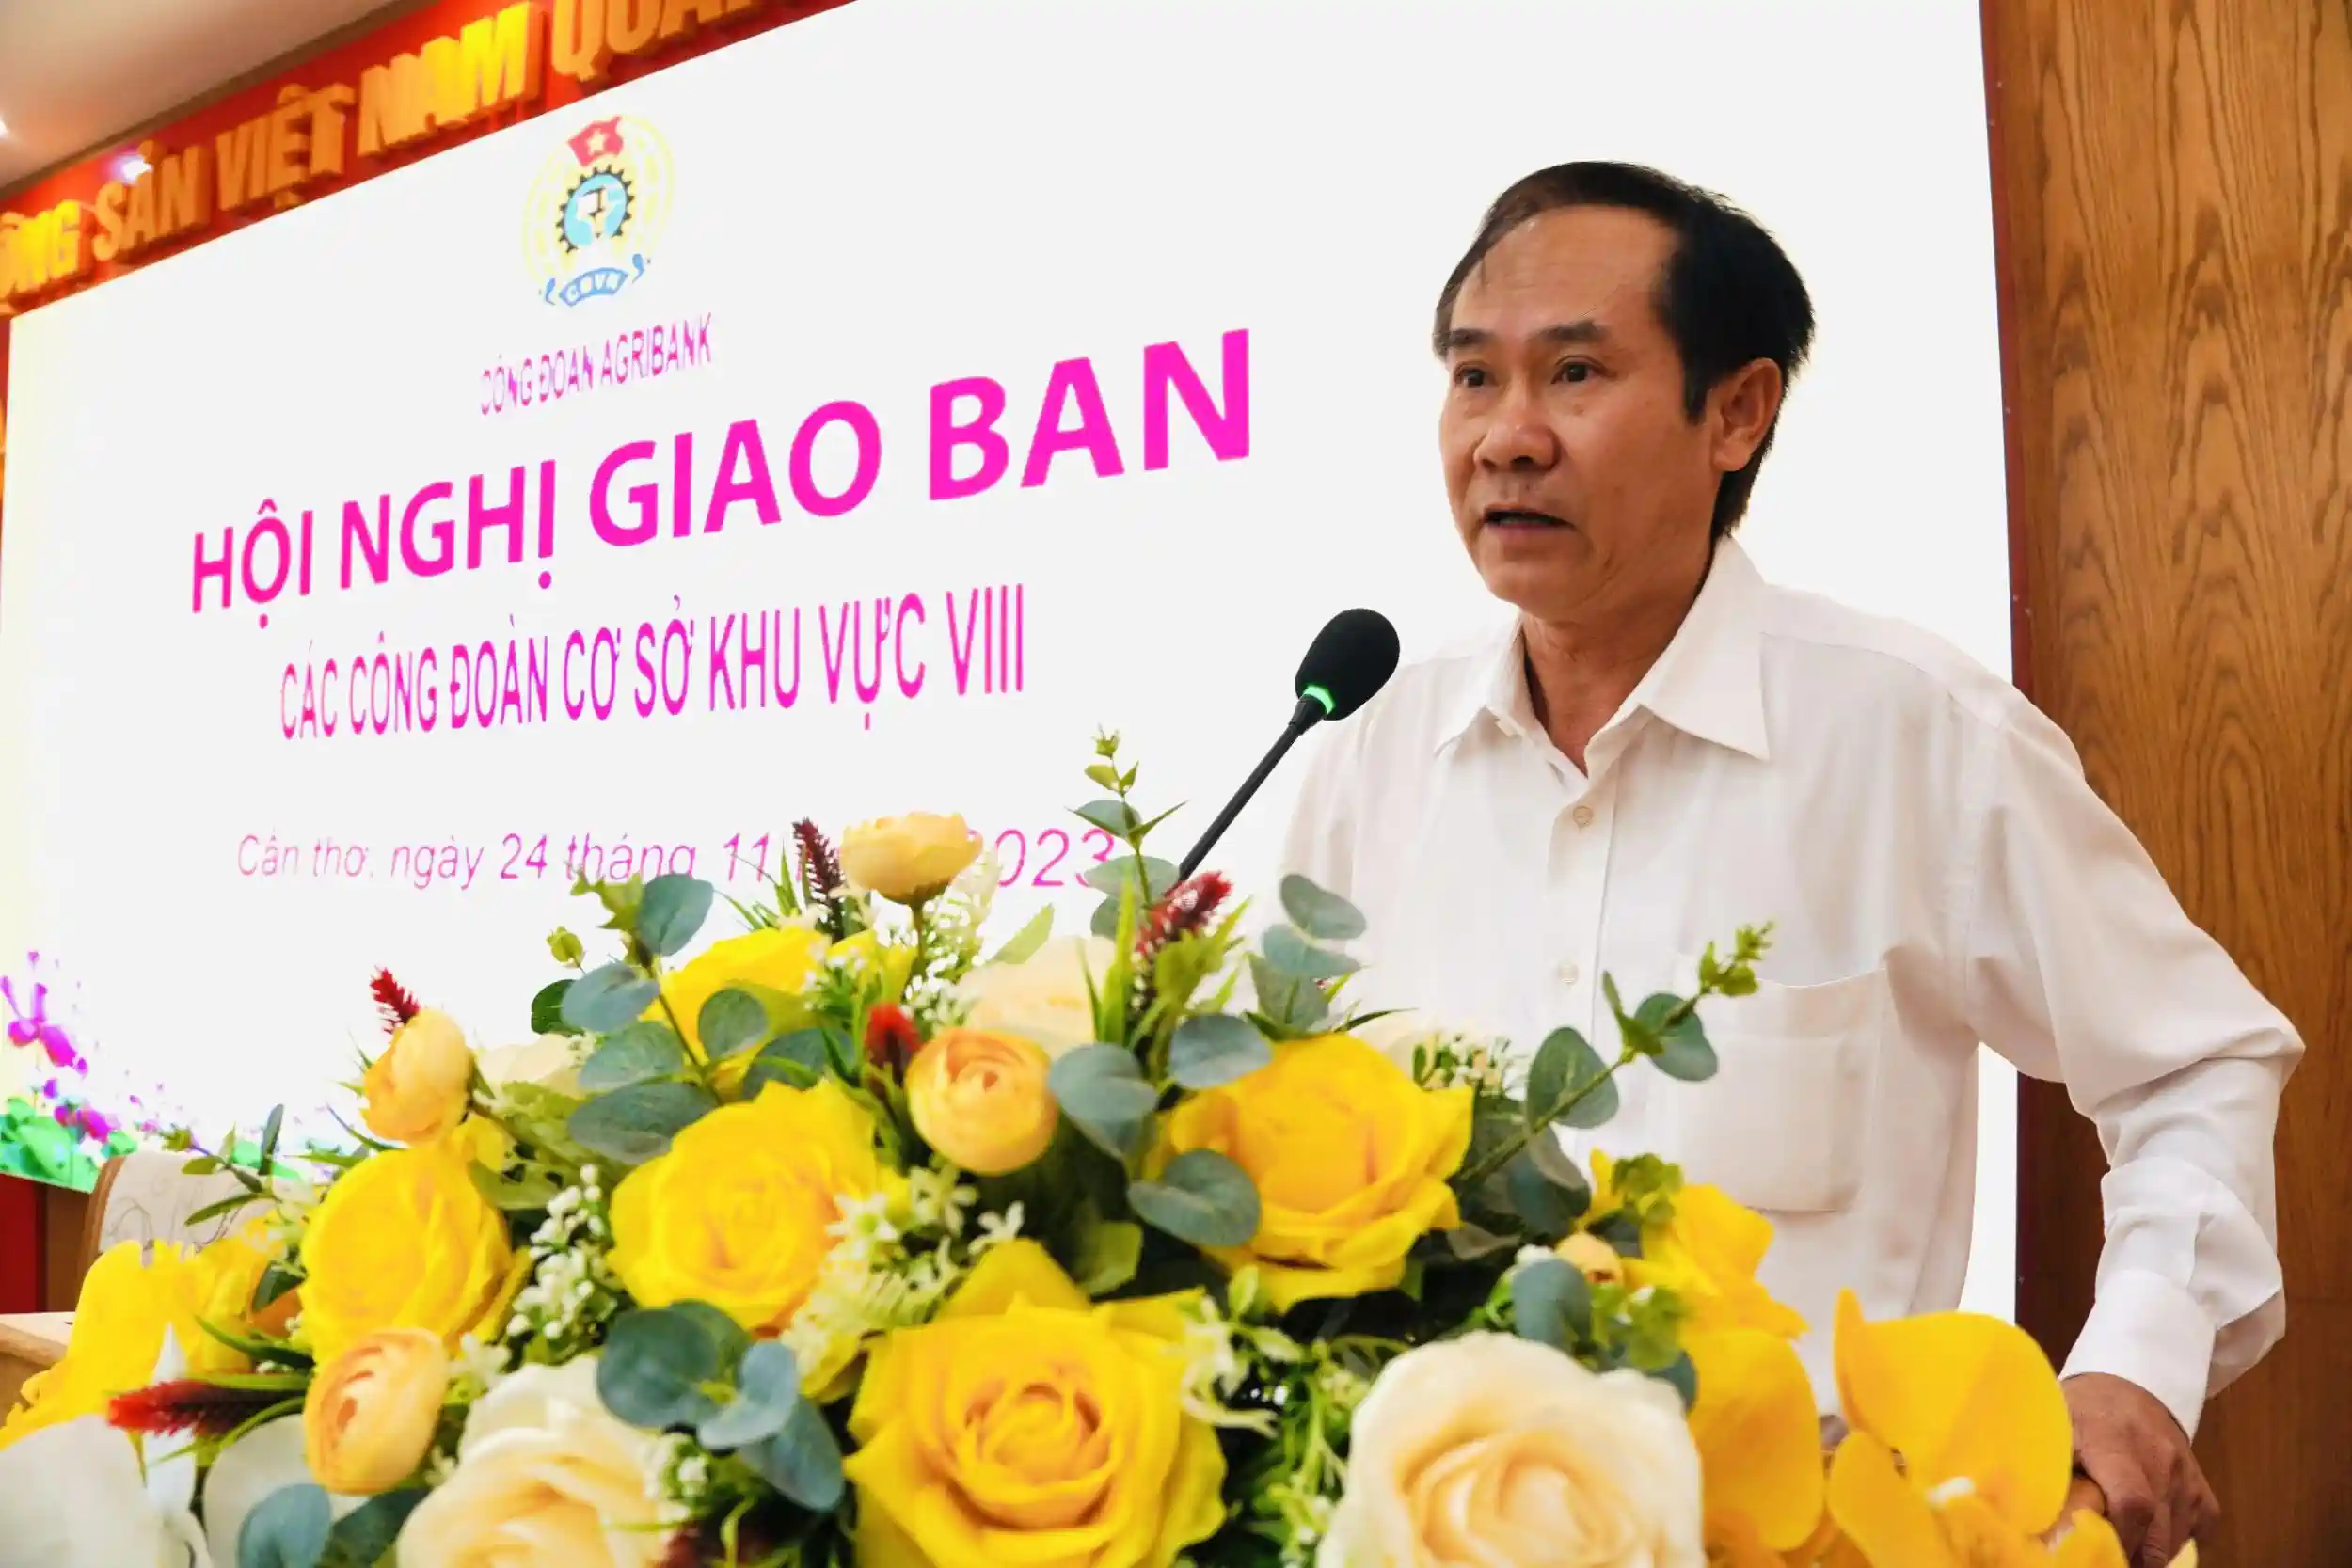 Đồng chí Bùi Thanh Quang, Ủy viên BCH Công đoàn Agribank, Trưởng Văn phòng đại diện Agribank khu vực Tây Nam Bộ phát biểu tại hội nghị. Ảnh: MINH KHƯƠNG